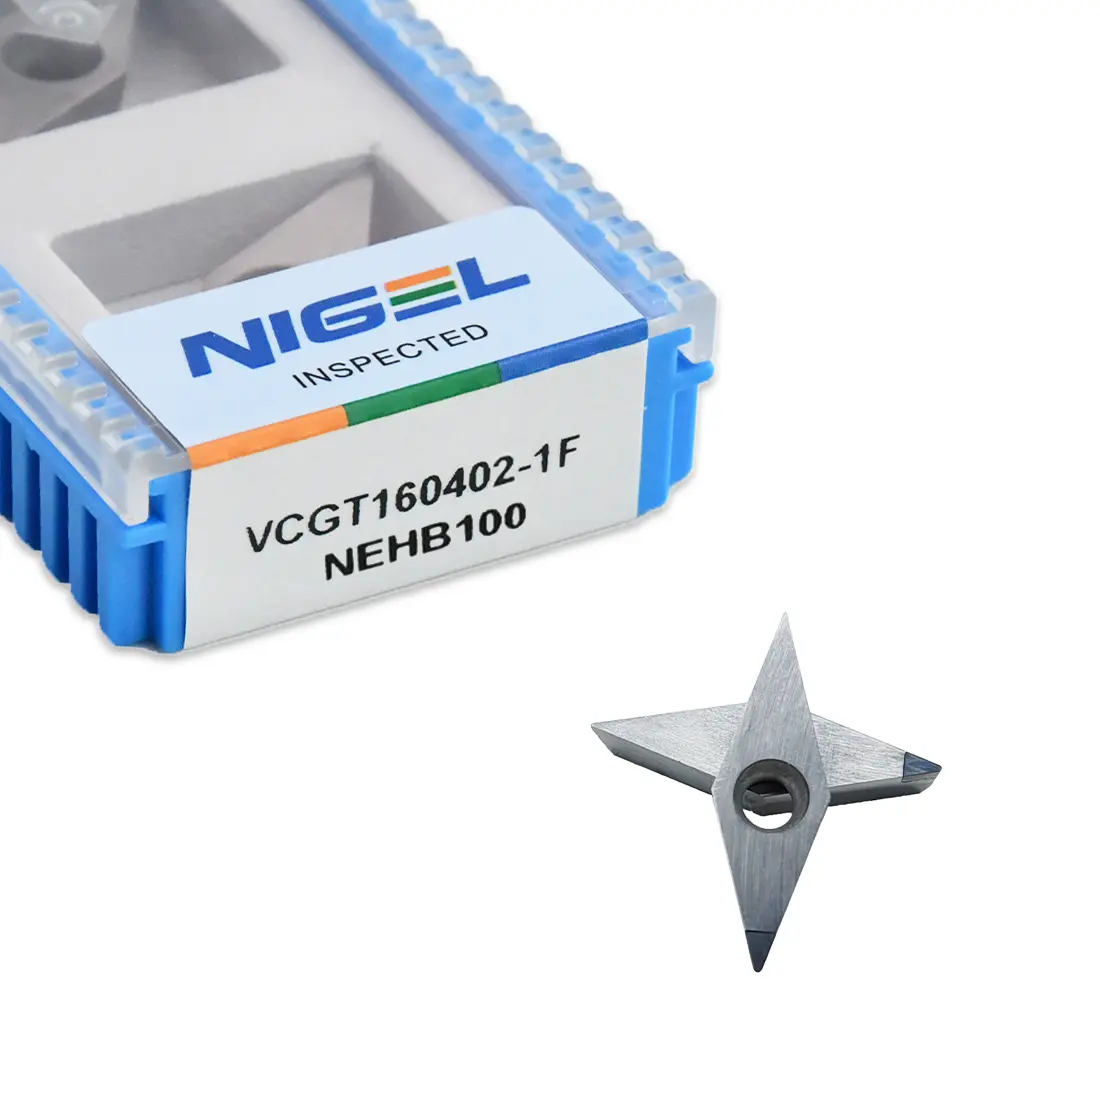 Nigel Pcd Draaiende Inzetstukken Voor Cnc Draaibank Tool Vcgt 160402 Hoge Hardheid Diamant Inzetstukken Voor Aluminium Bewerking